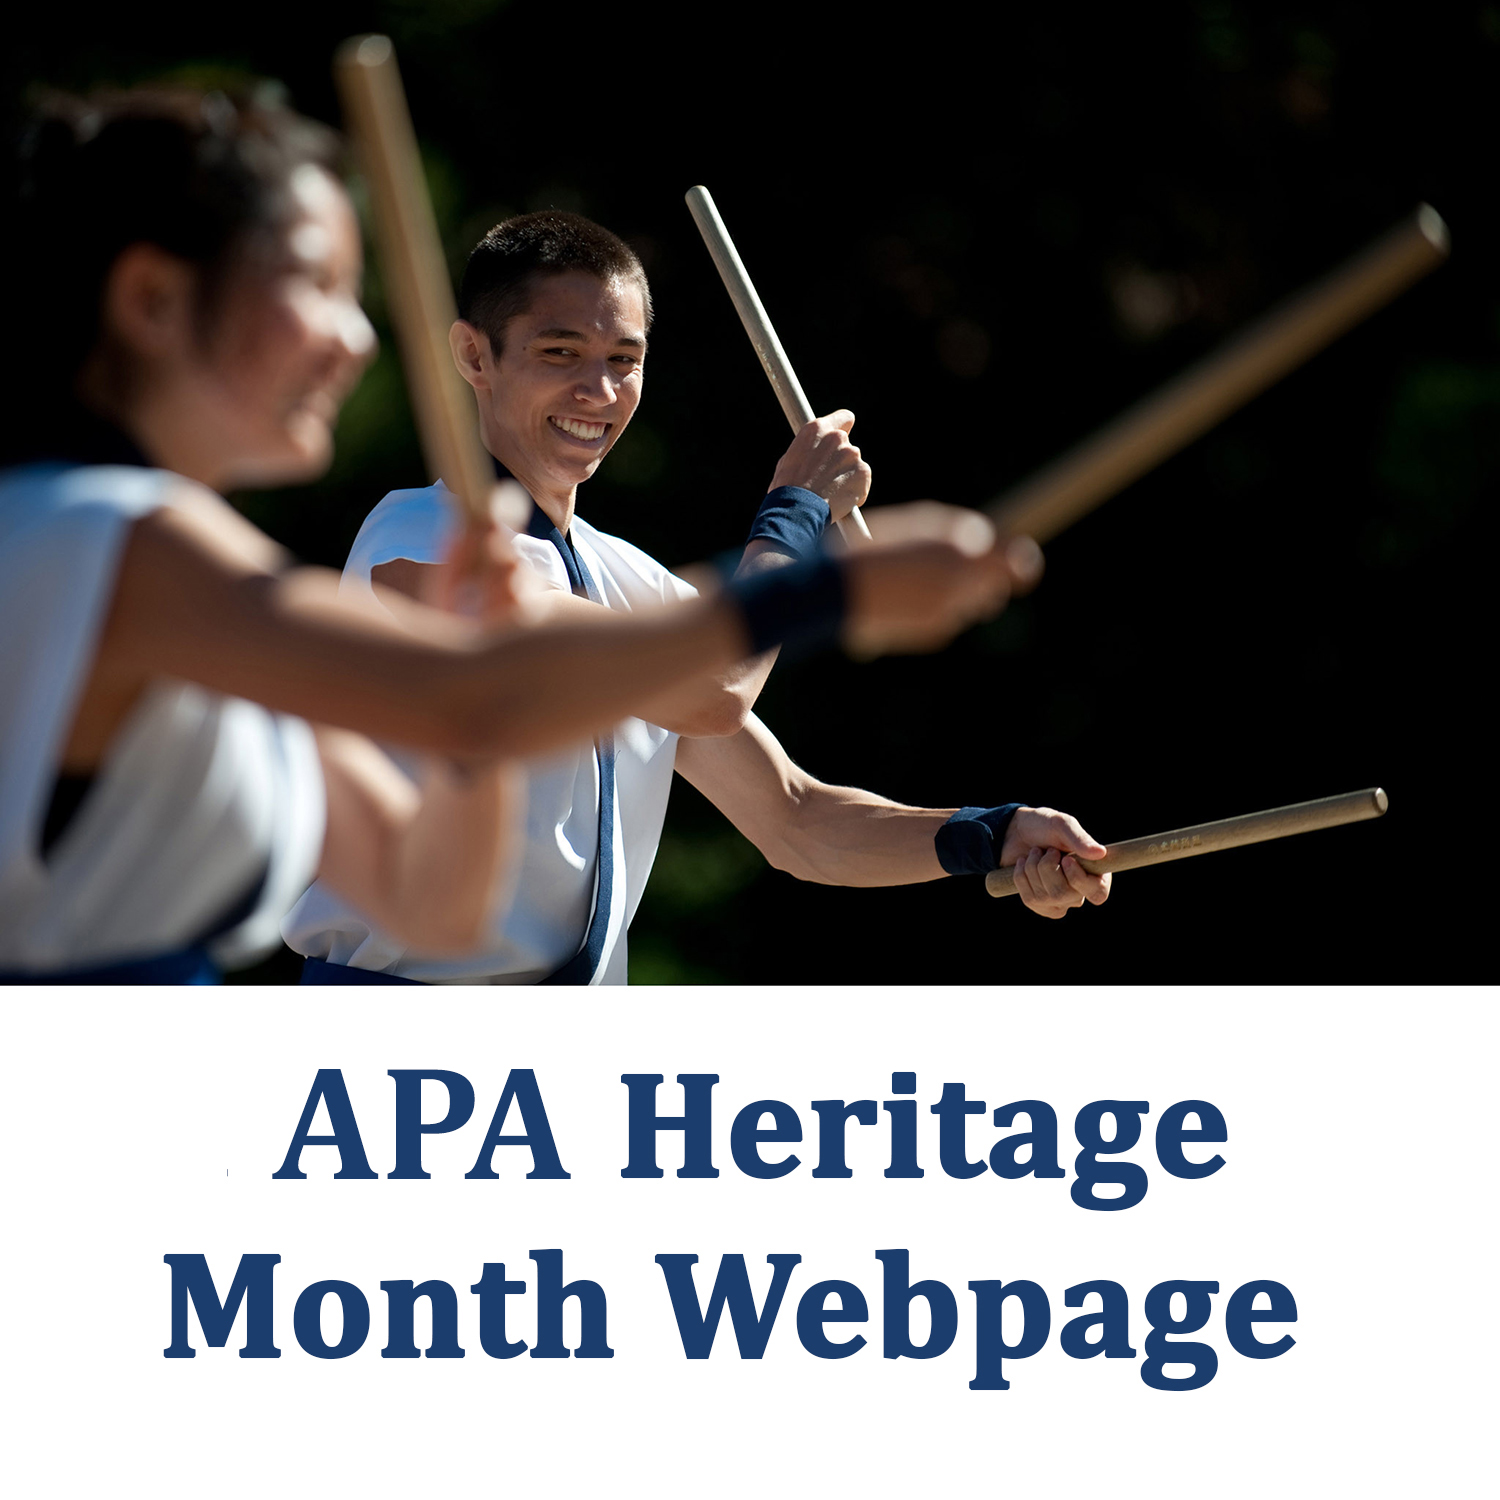 APA Heritage Month Webpage